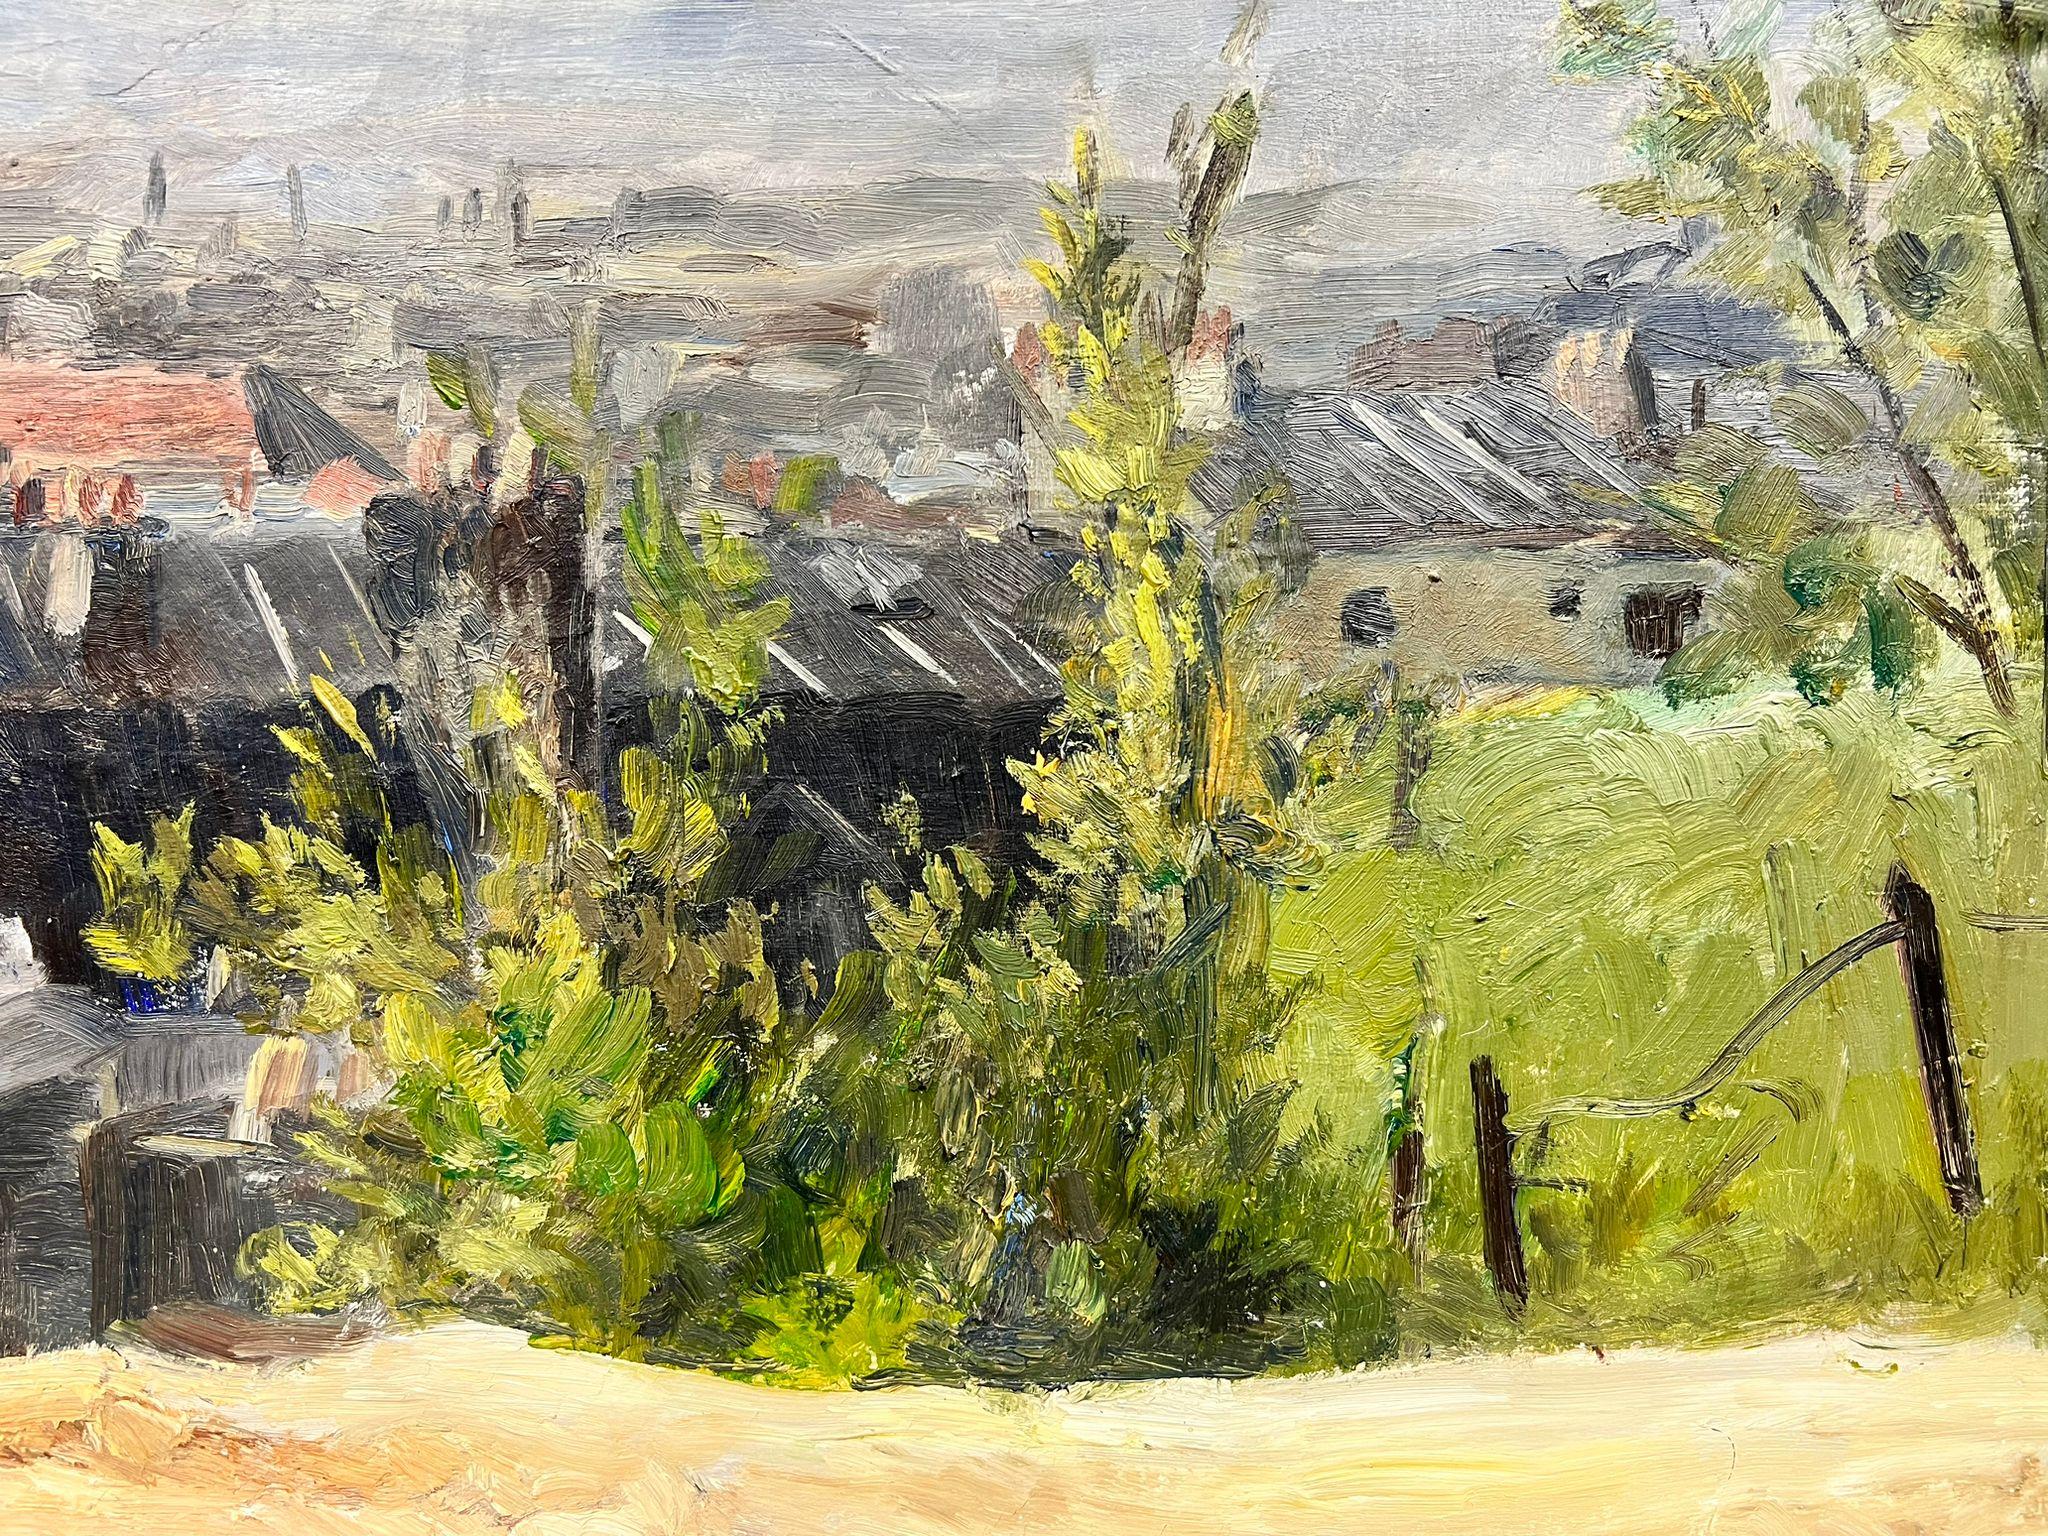 Storm Over Clouds Rooftops, peinture à l'huile épaisse signée Thick Impasto - Post-impressionnisme Painting par Josine Vignon